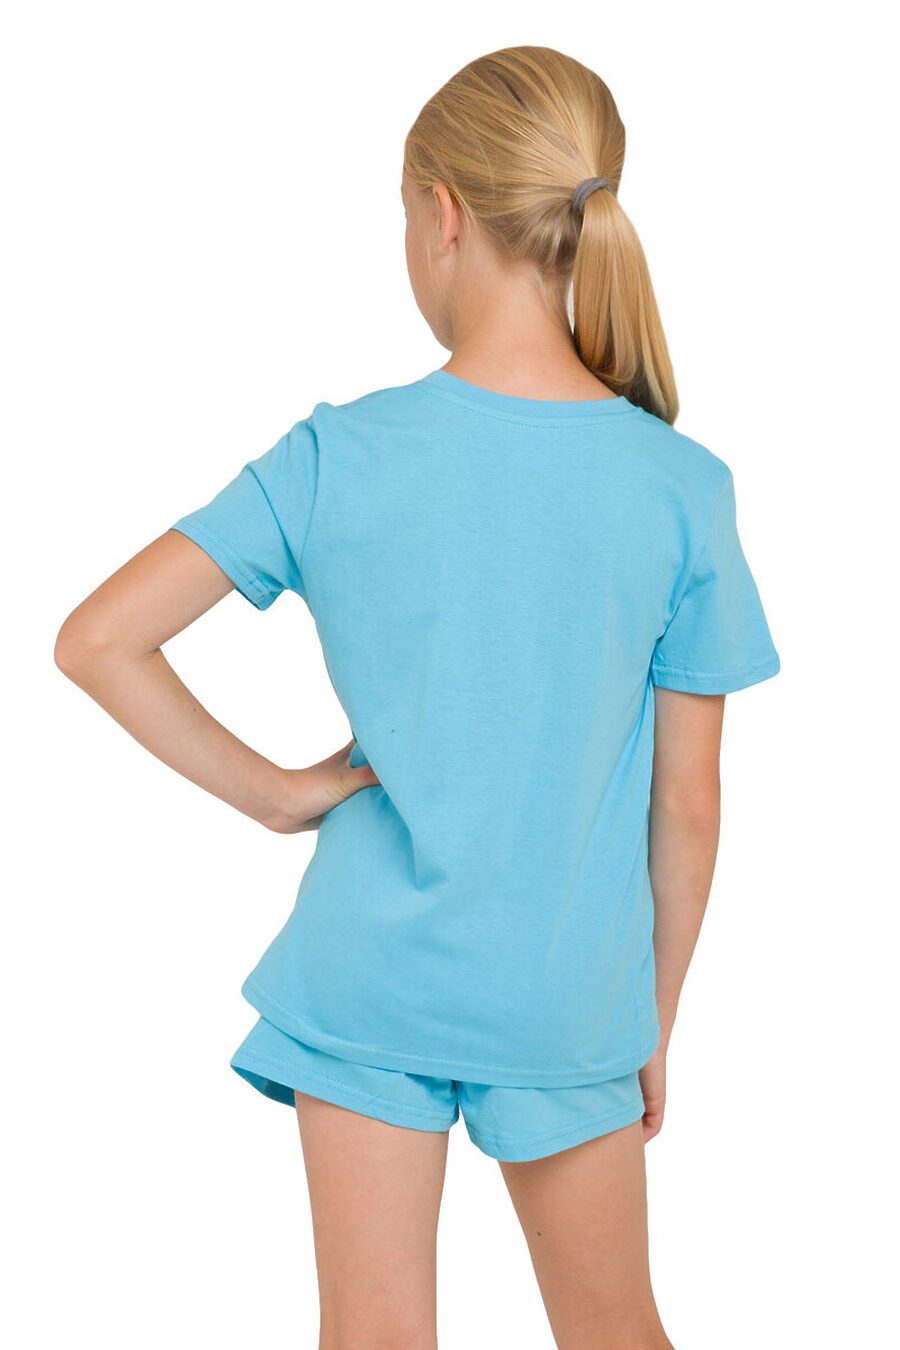 Пижама (Футболка+Шорты) для девочек N.O.A. 666281 купить оптом от производителя. Совместная покупка детской одежды в OptMoyo